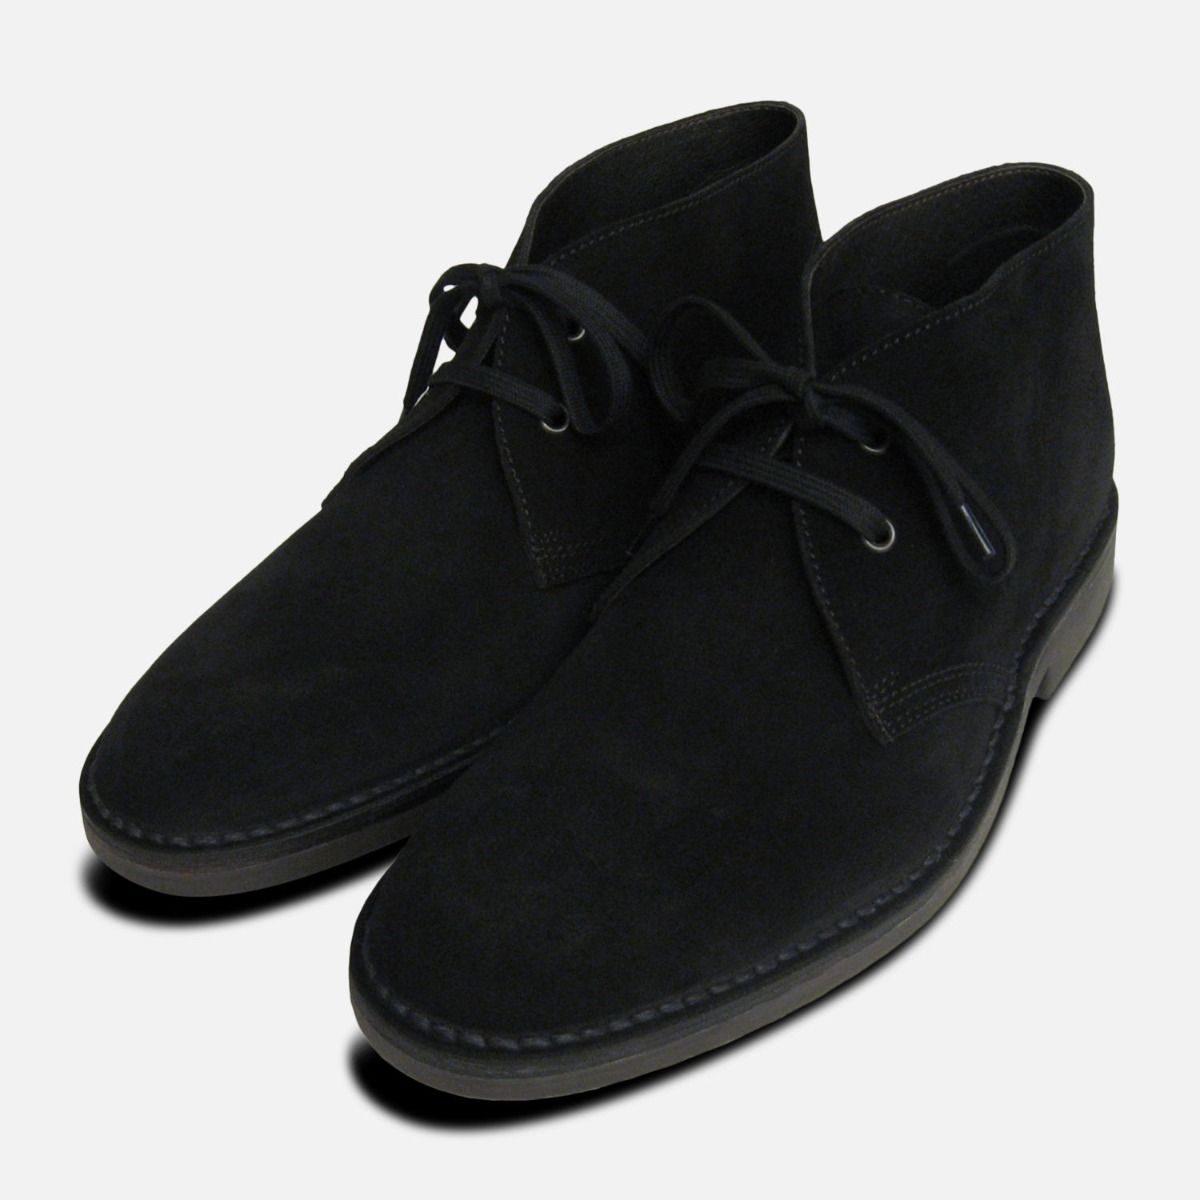 Black Suede Desert Boots for Men UK